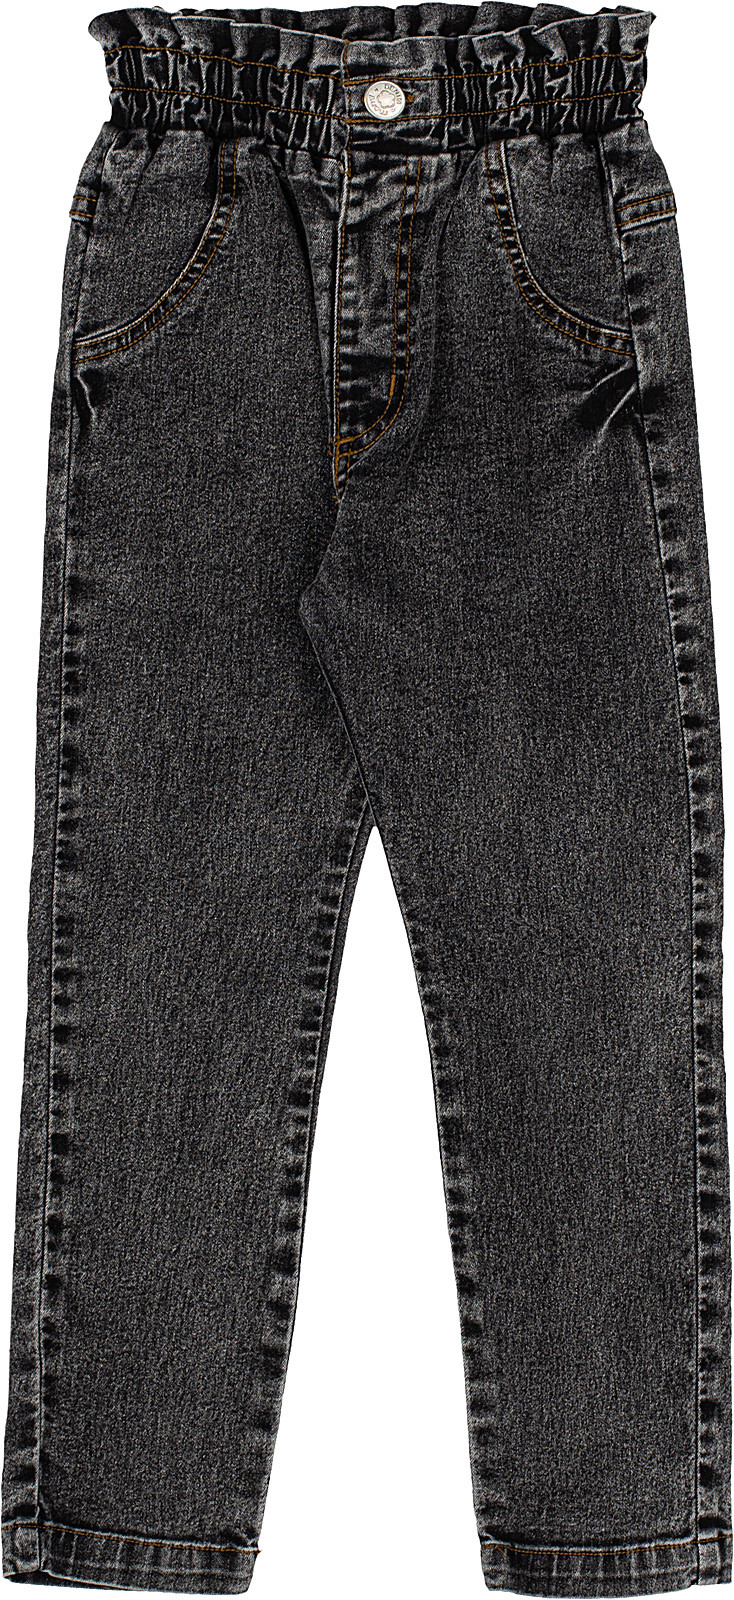 Calça Jeans Preto Marmorizado H3316 - Momi